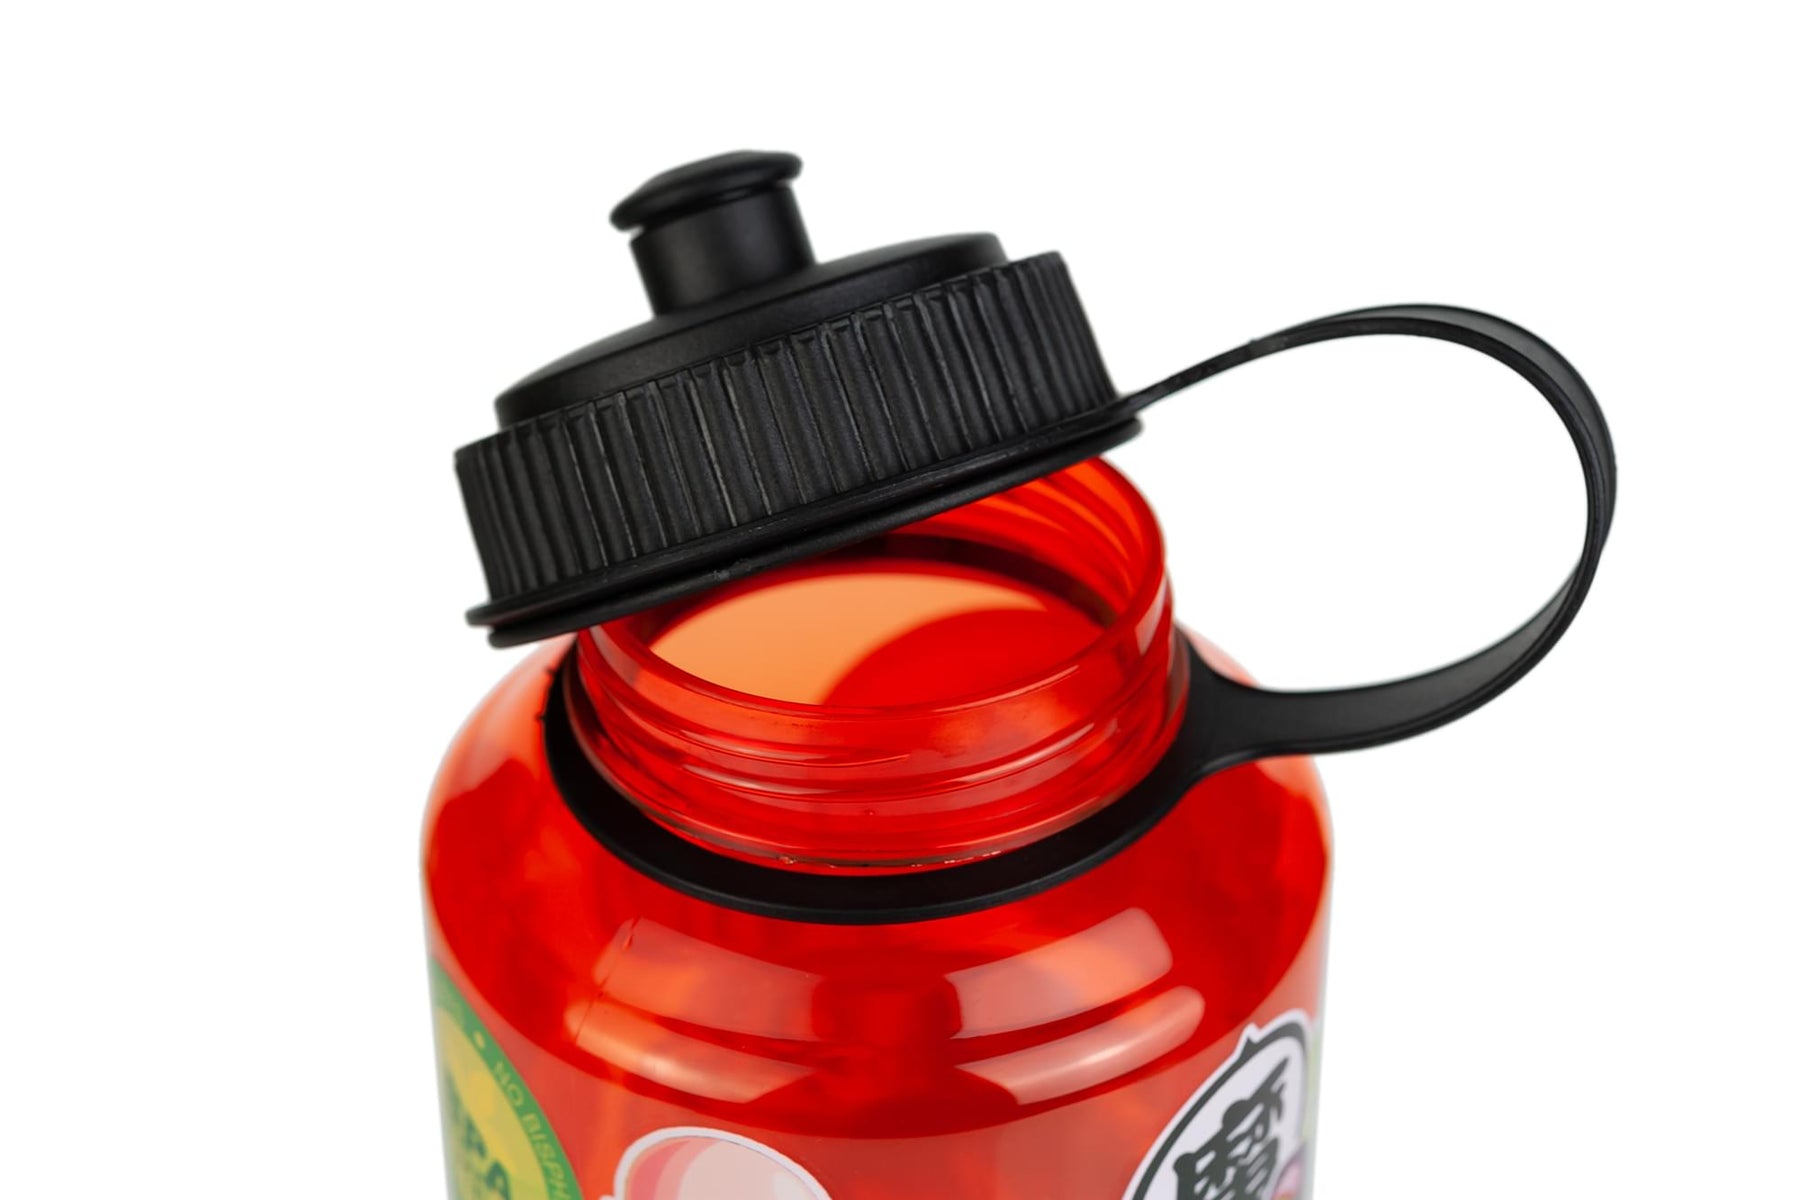 Dragon Ball Z 32 oz Plastic Water Bottle - Single Wall Drinking Sports Bottle